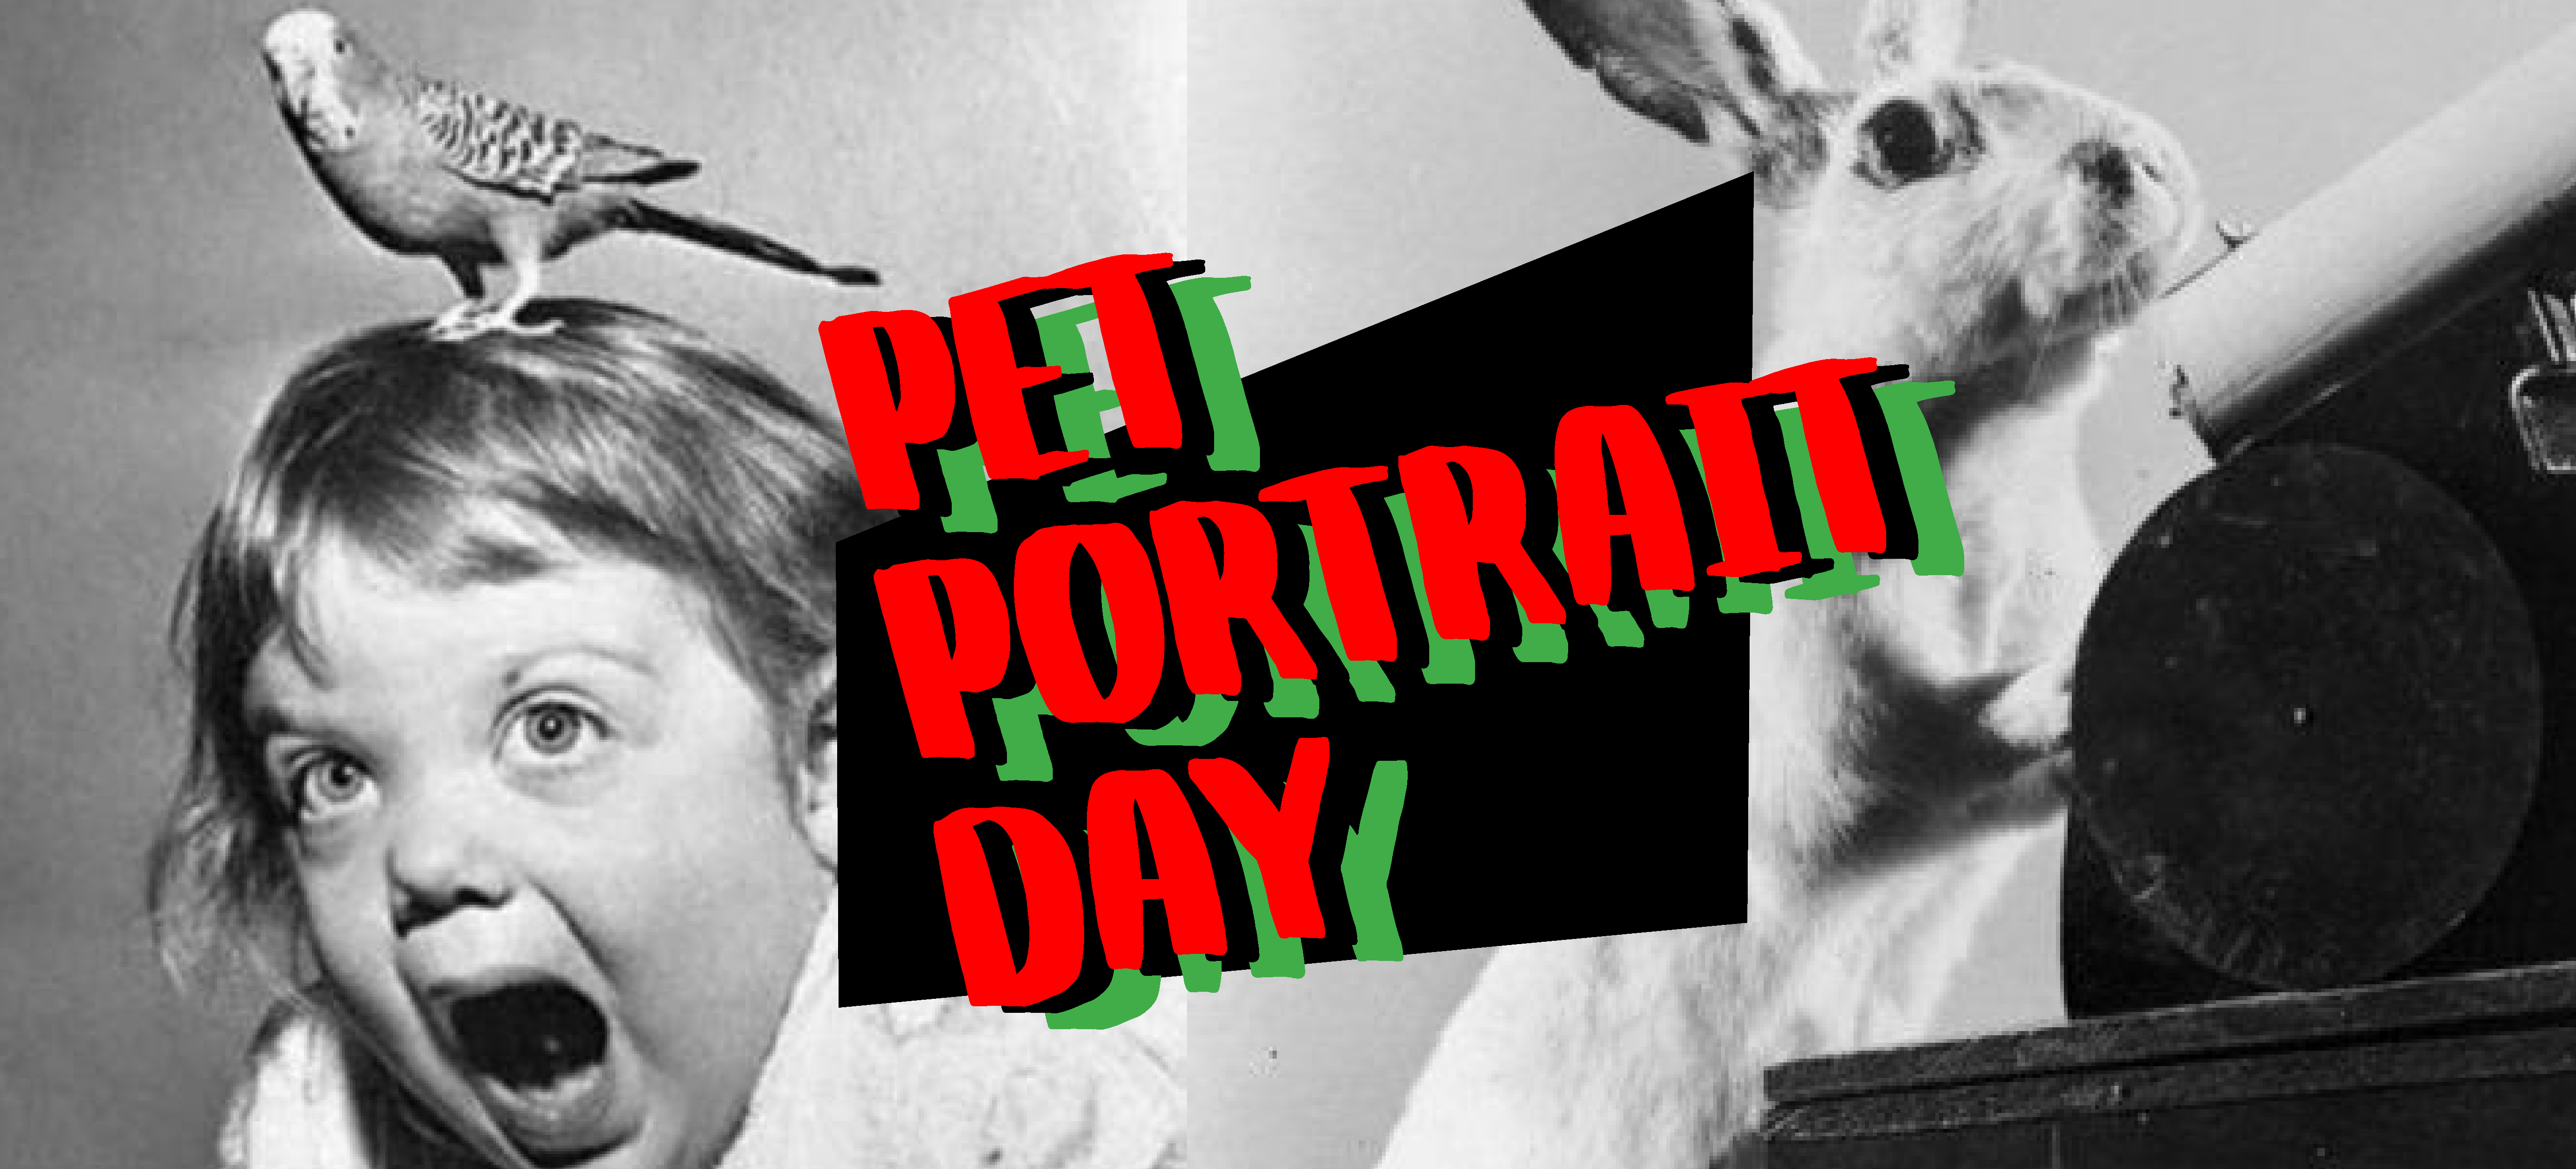 PAVED Arts’ Pet Portrait Fundraiser